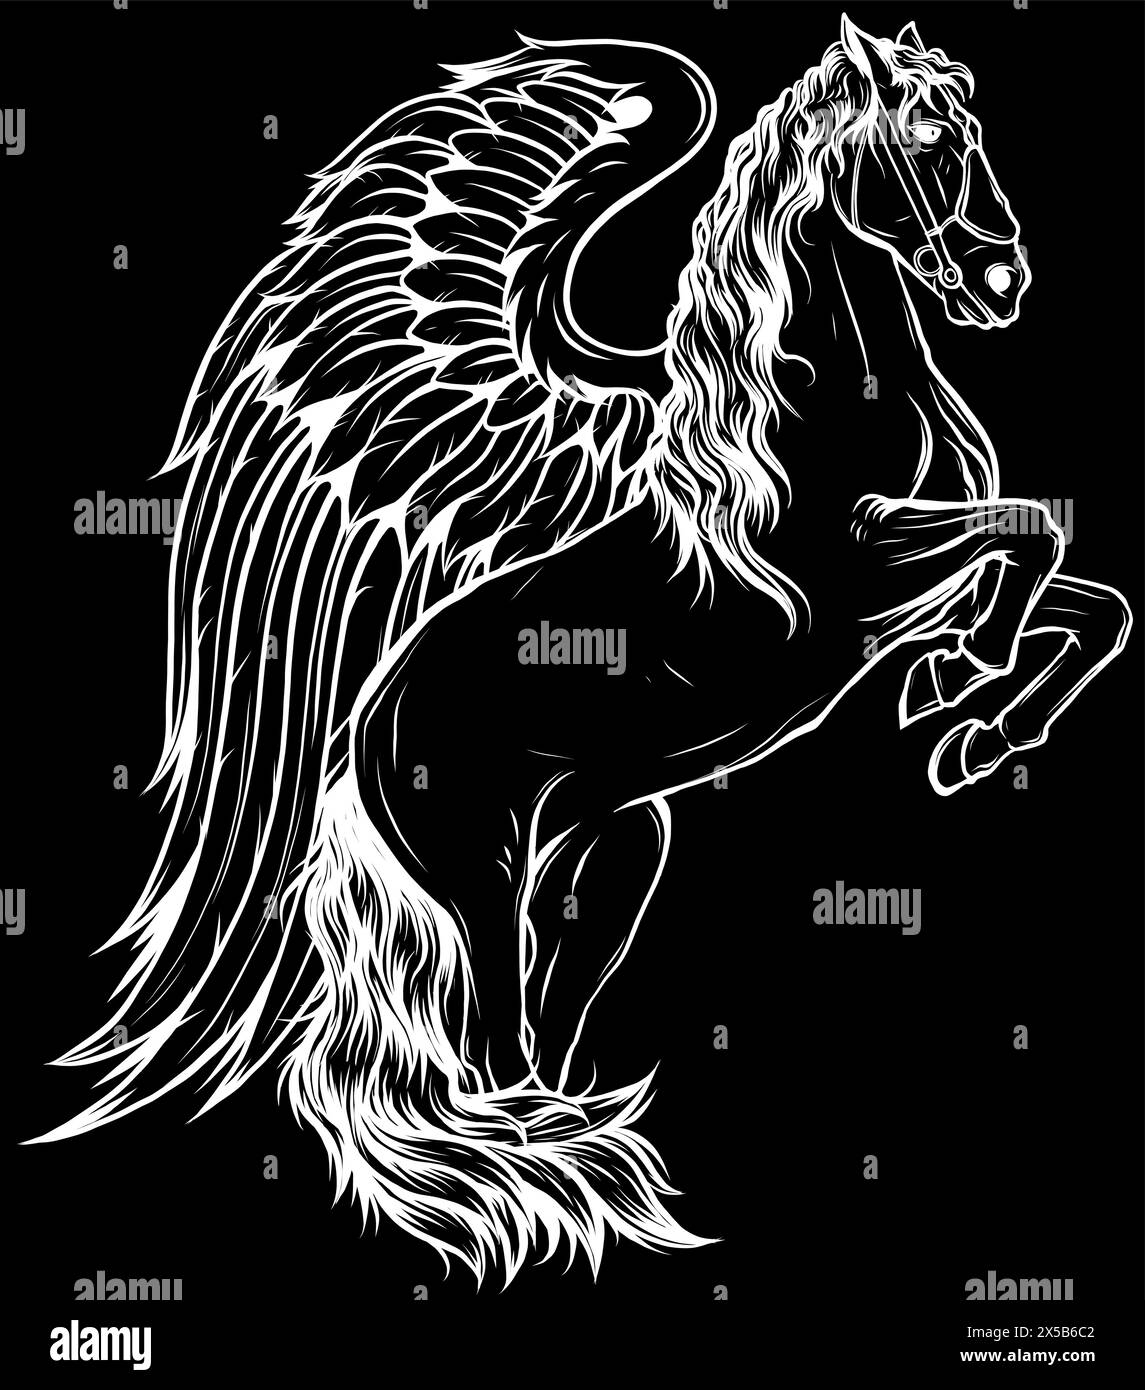 white silhouette of flying horse wings on black background illustration mascot vector logo design Stock Vector